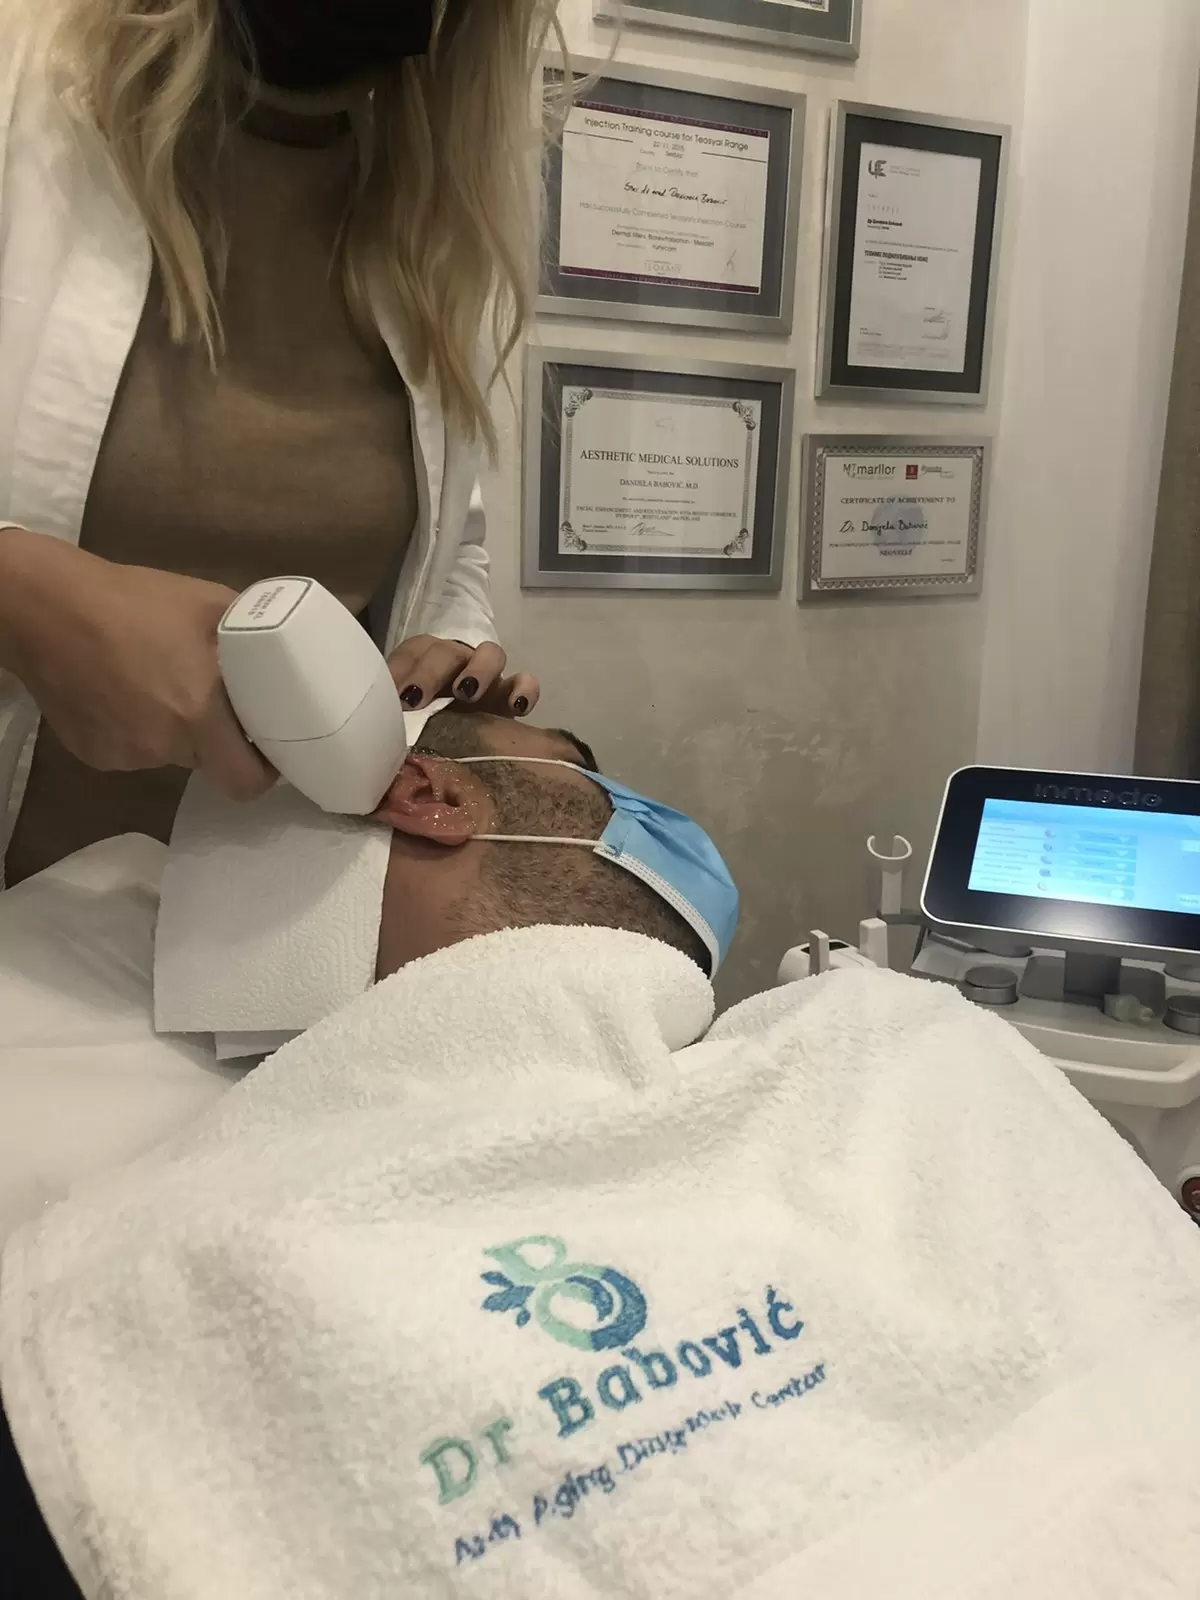 Maljavost tretman kože laserom - uklanjanje dlaka